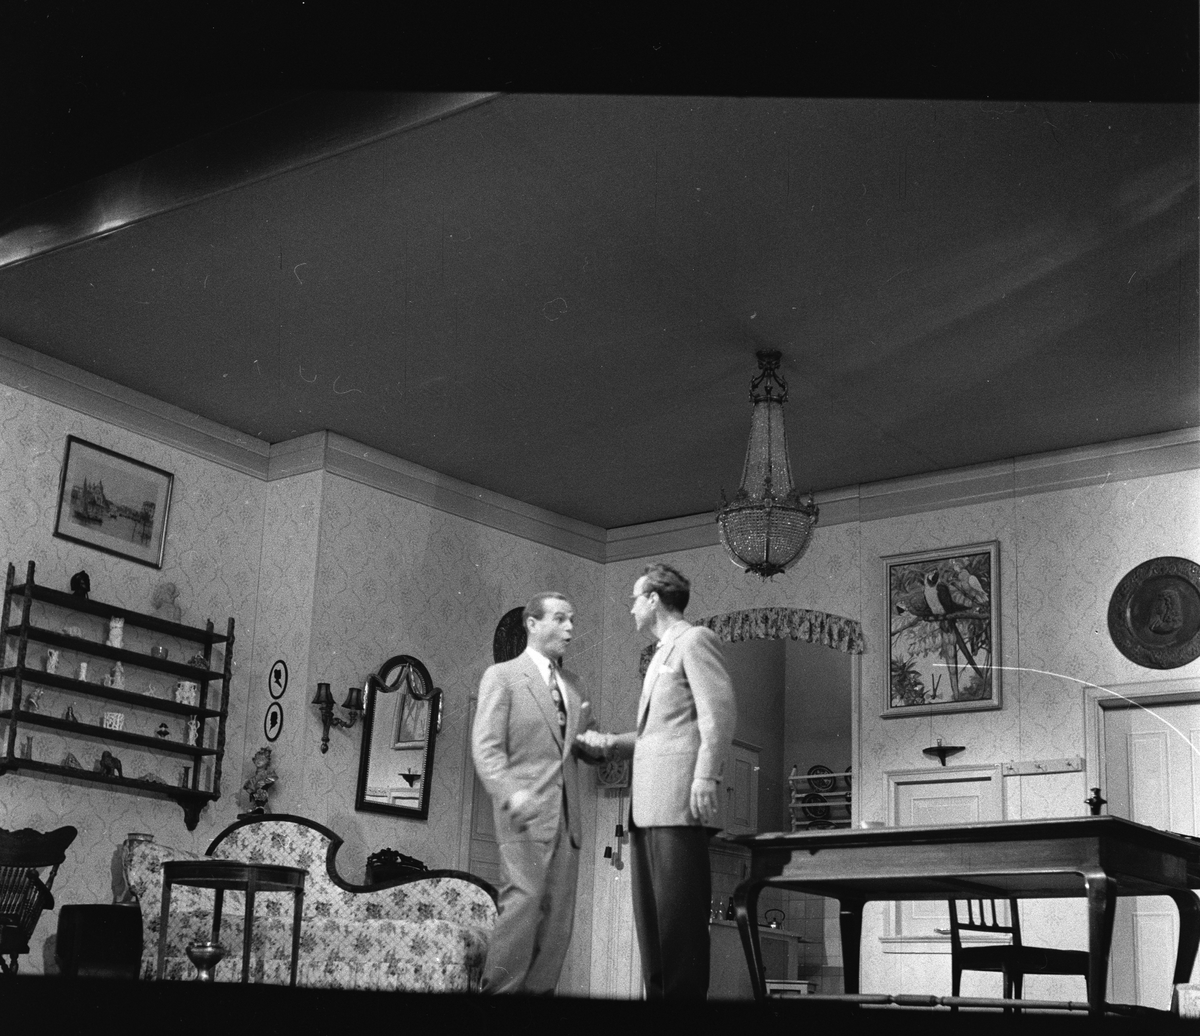 Oppsetning av "Begge eller ingen" på Centralteatret. Flere skuespillere sammen på scenen. Fotografert 21. september 1956.